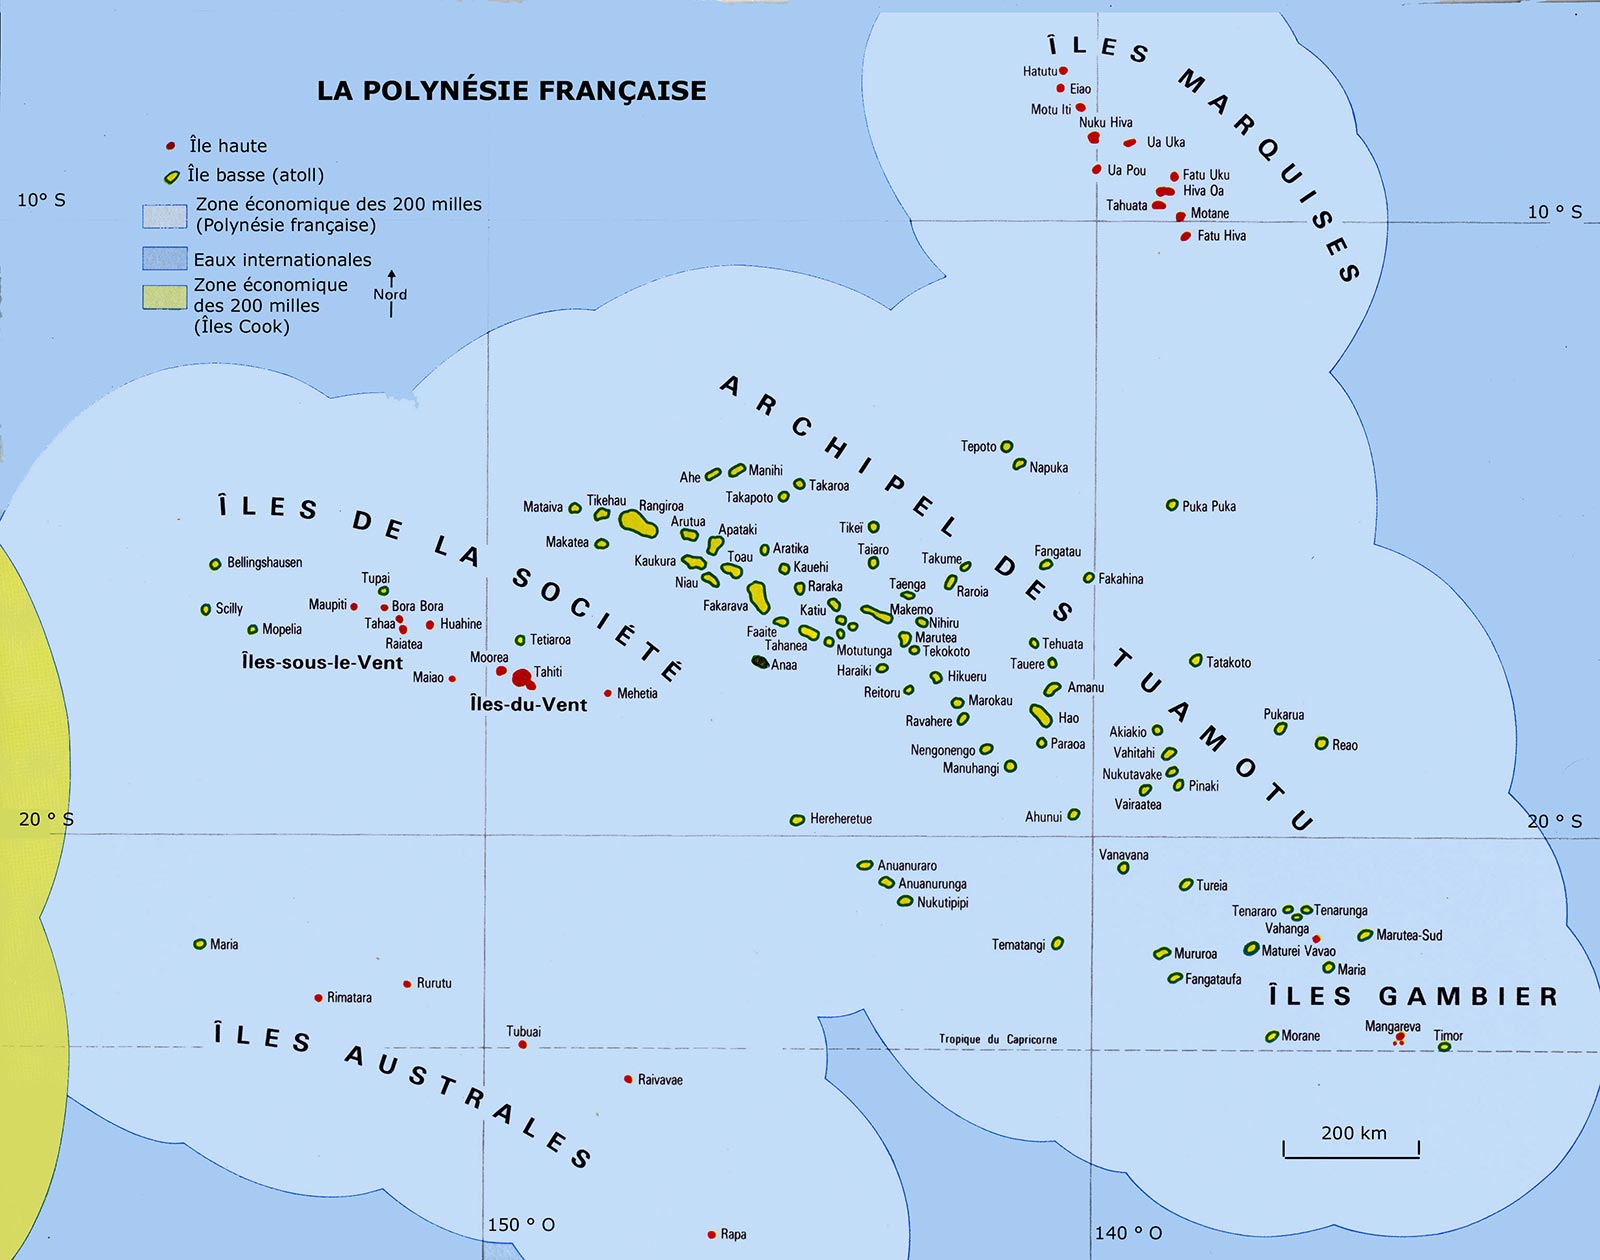 Polynésie française - Carte des îles et archipels